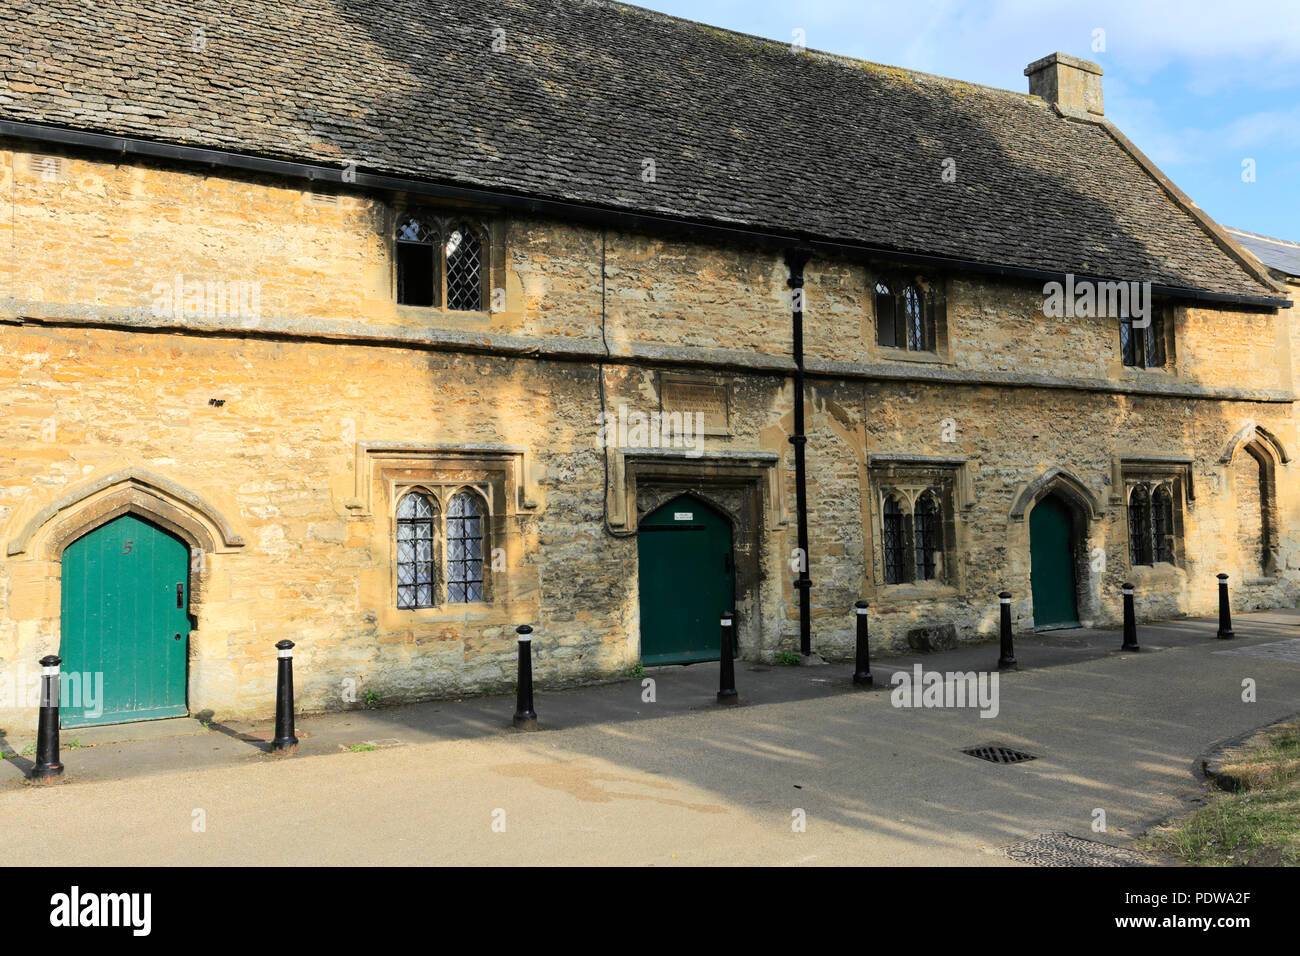 Les grands hospices à la ville de Burford, Oxfordshire, England, UK Cotswolds Banque D'Images